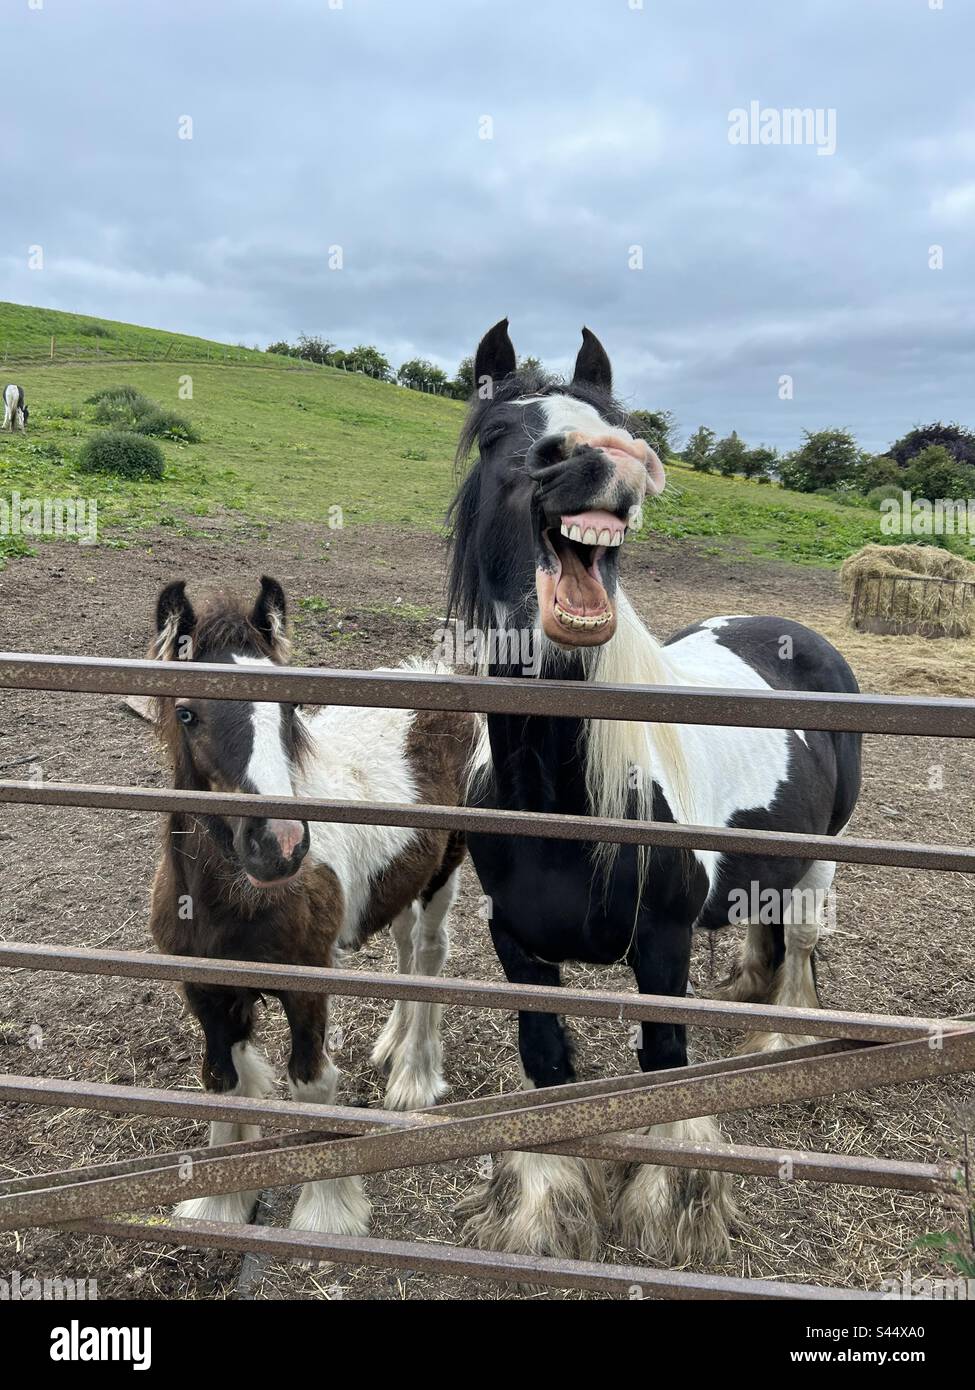 Esilarante e divertente immagine di un cavallo ridendo con la bocca aperta e denti che mostrano. Il suo nemico è con lui Foto Stock